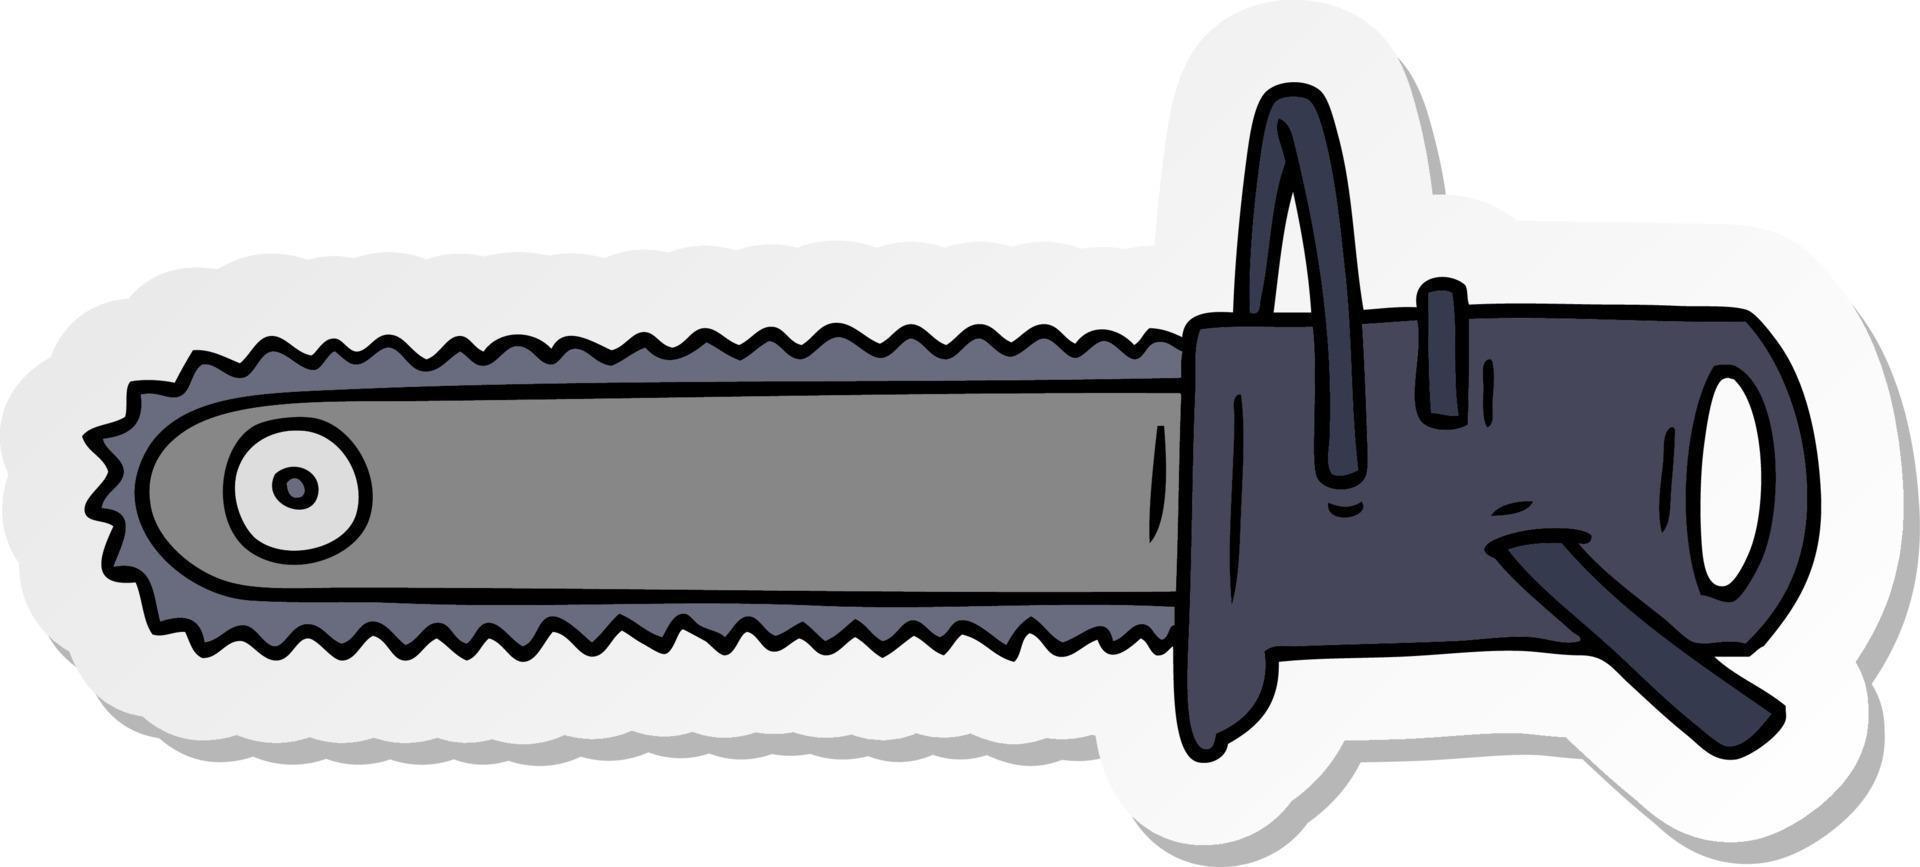 klistermärke tecknad doodle för en motorsåg vektor